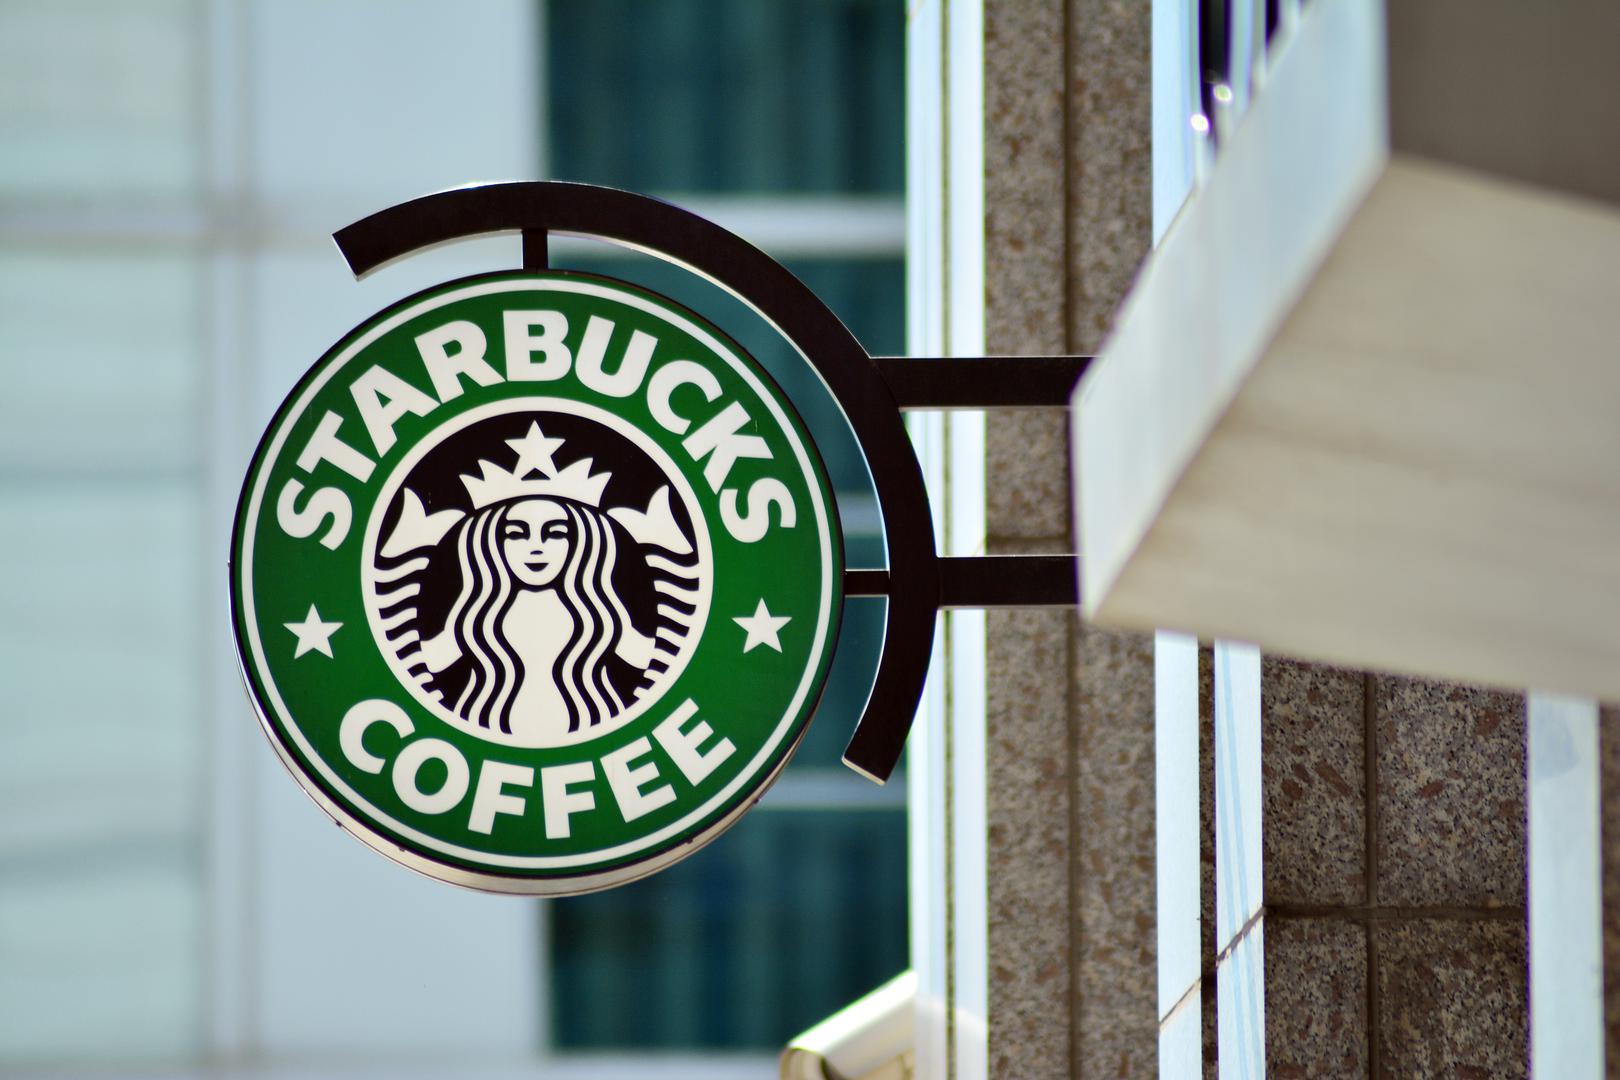 Milenijalcima, generaciji rođenoj od 1980. do 2000., na 14. mjestu je Starbucks. 